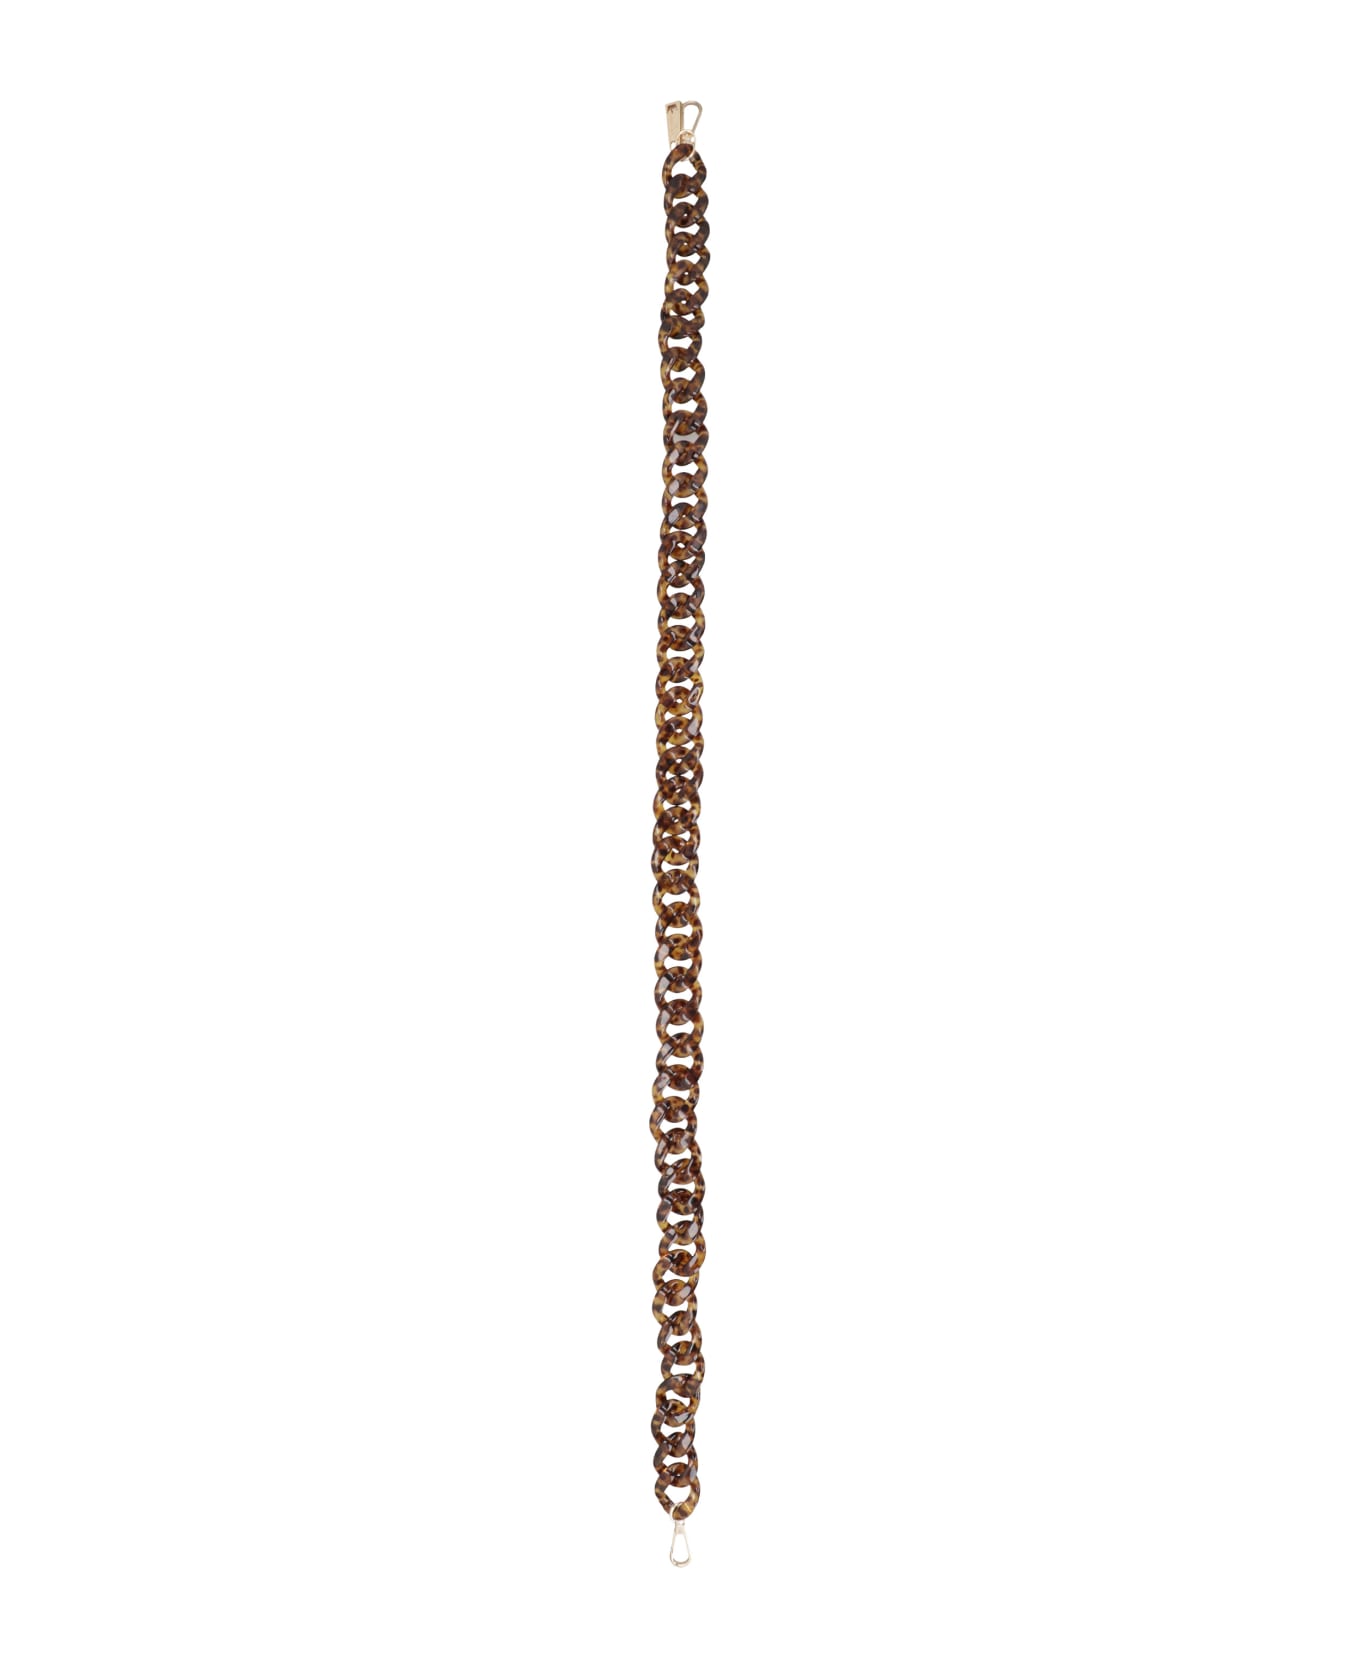 LaMilanesa Tortoiseshell Chain Shoulder Strap - brown